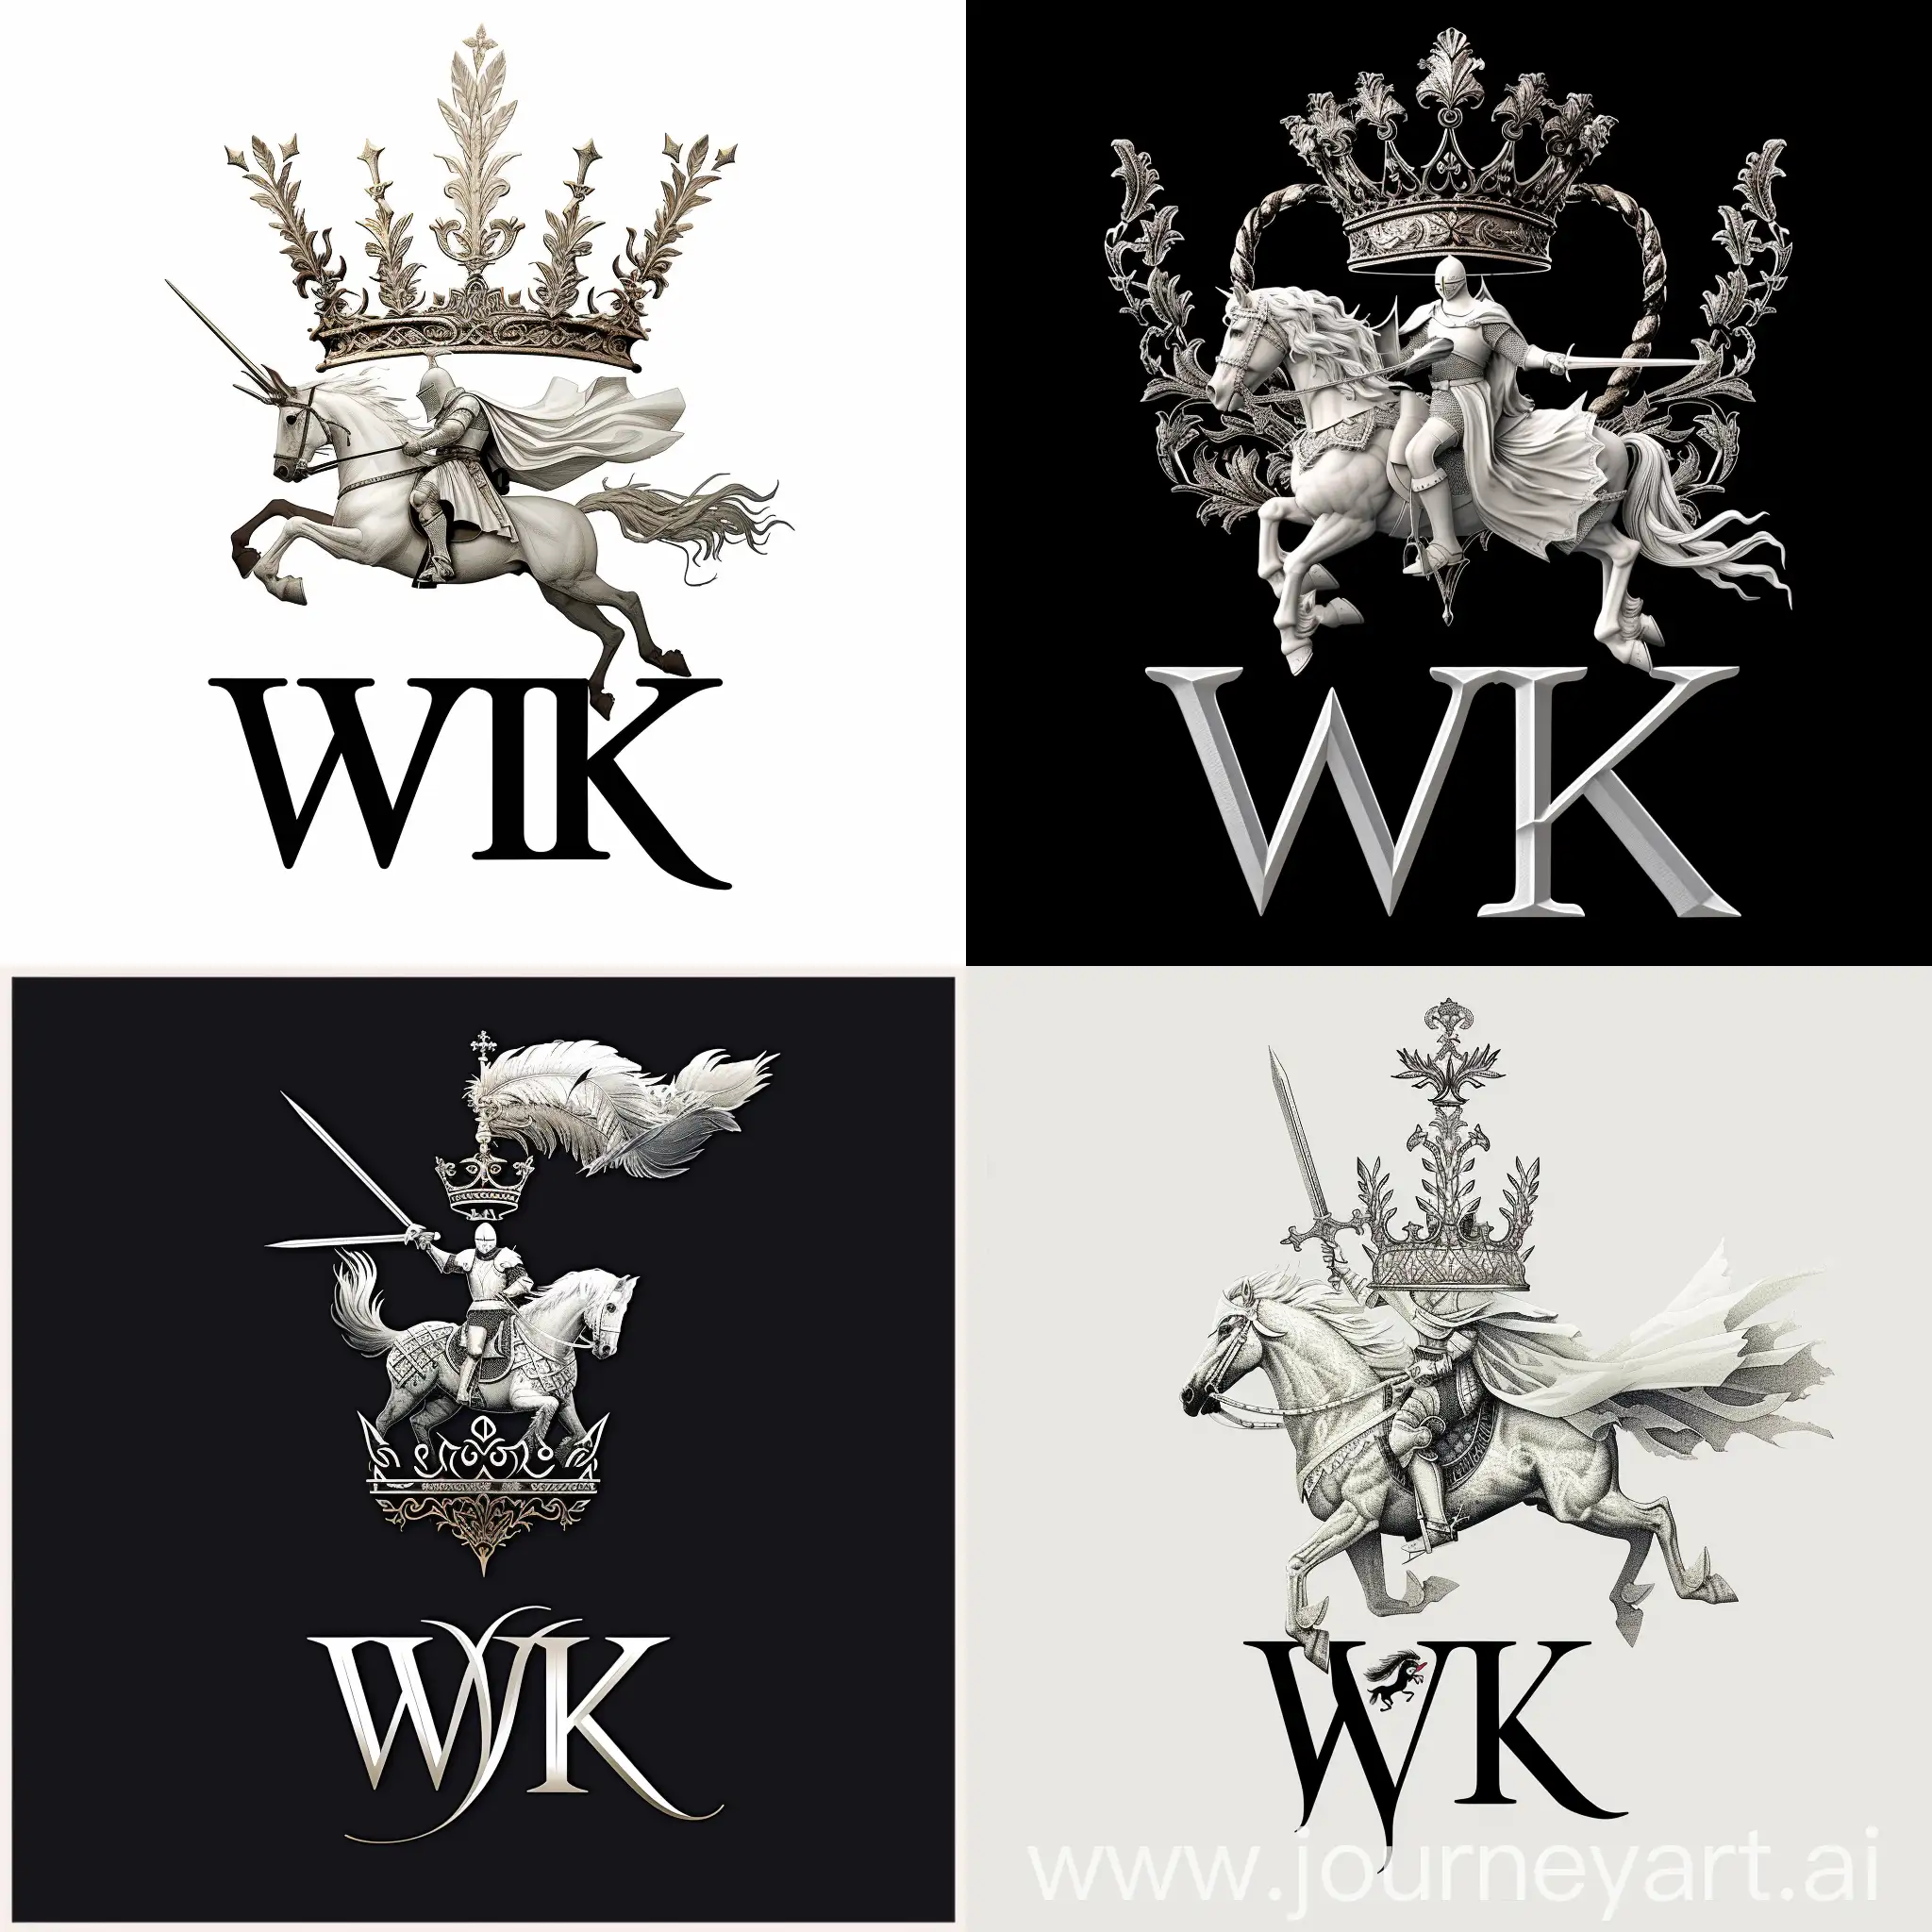 логотип "WK", где буквы "WK" стилизованы под форму короны с изысканными узорами, над короной изображен белый рыцарь на коне в боевой позе с  мечом в руках, рыцарь представлен в средневековой боевой броне с длинным плащом и шлемом с перьями, цветовая гамма включает белый цвет для образа рыцаря и серебристый для букв "WK", элегантный и утонченный шрифт для надписи чёрно-золотая "WK"